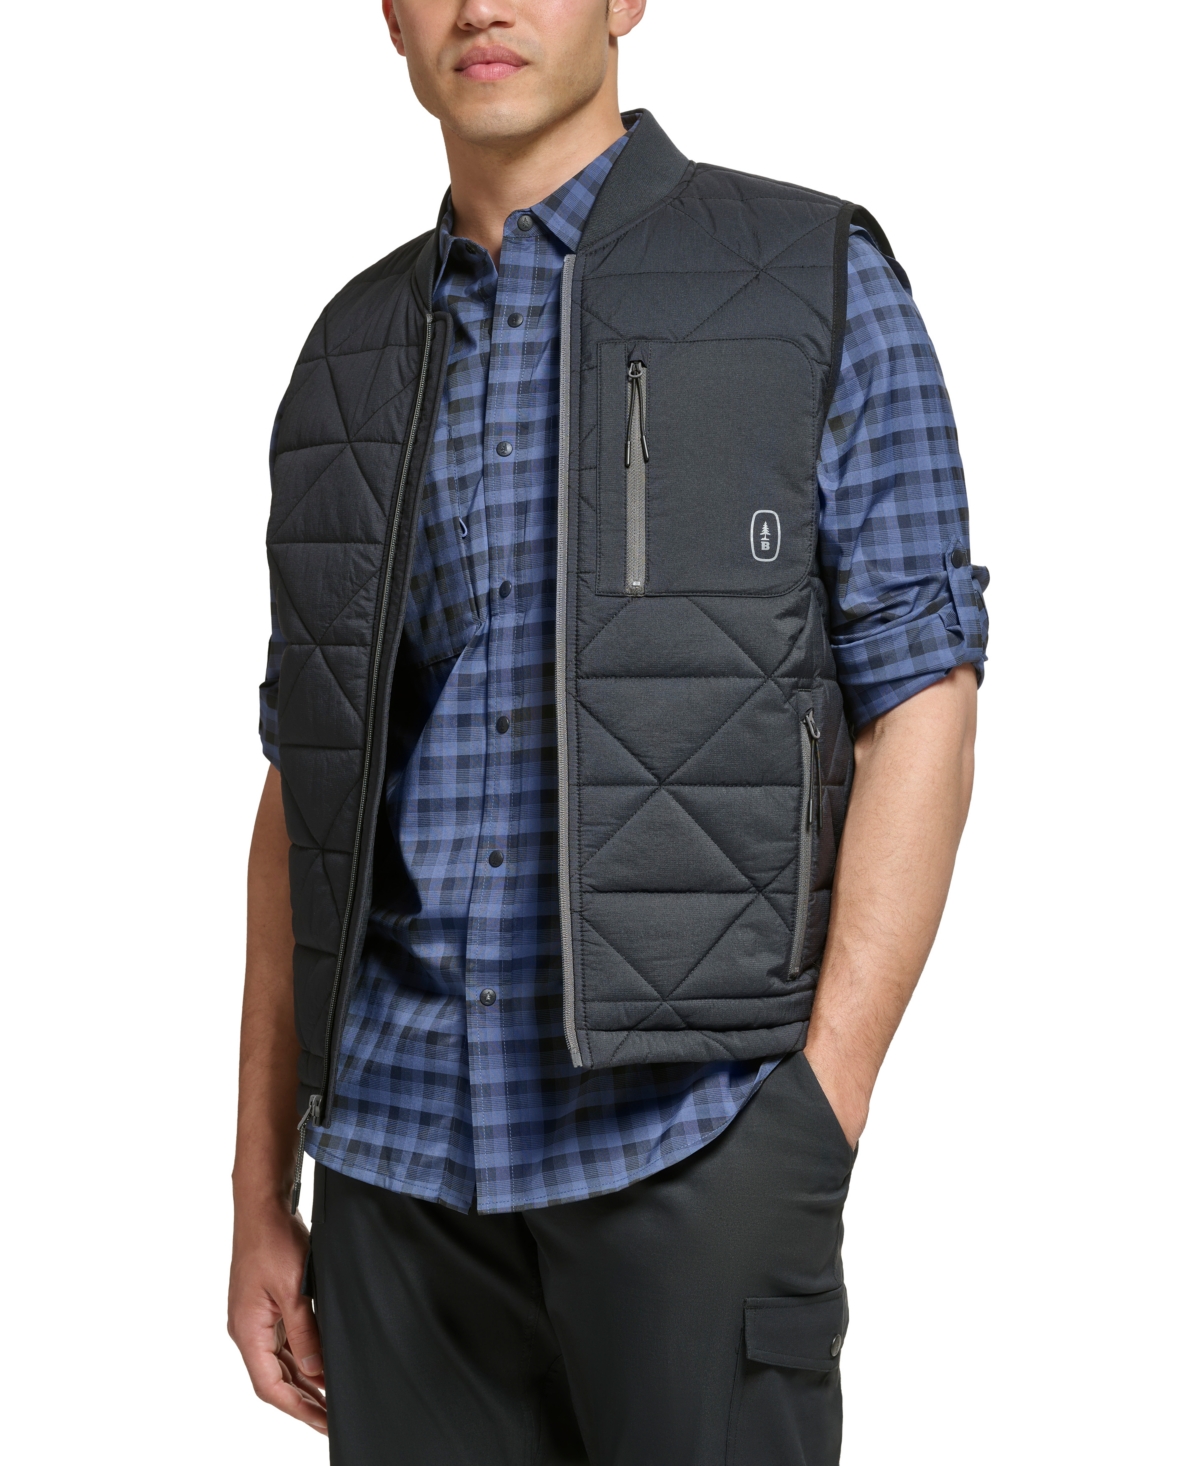 Bass Outdoor Men's Packable Liner Vest